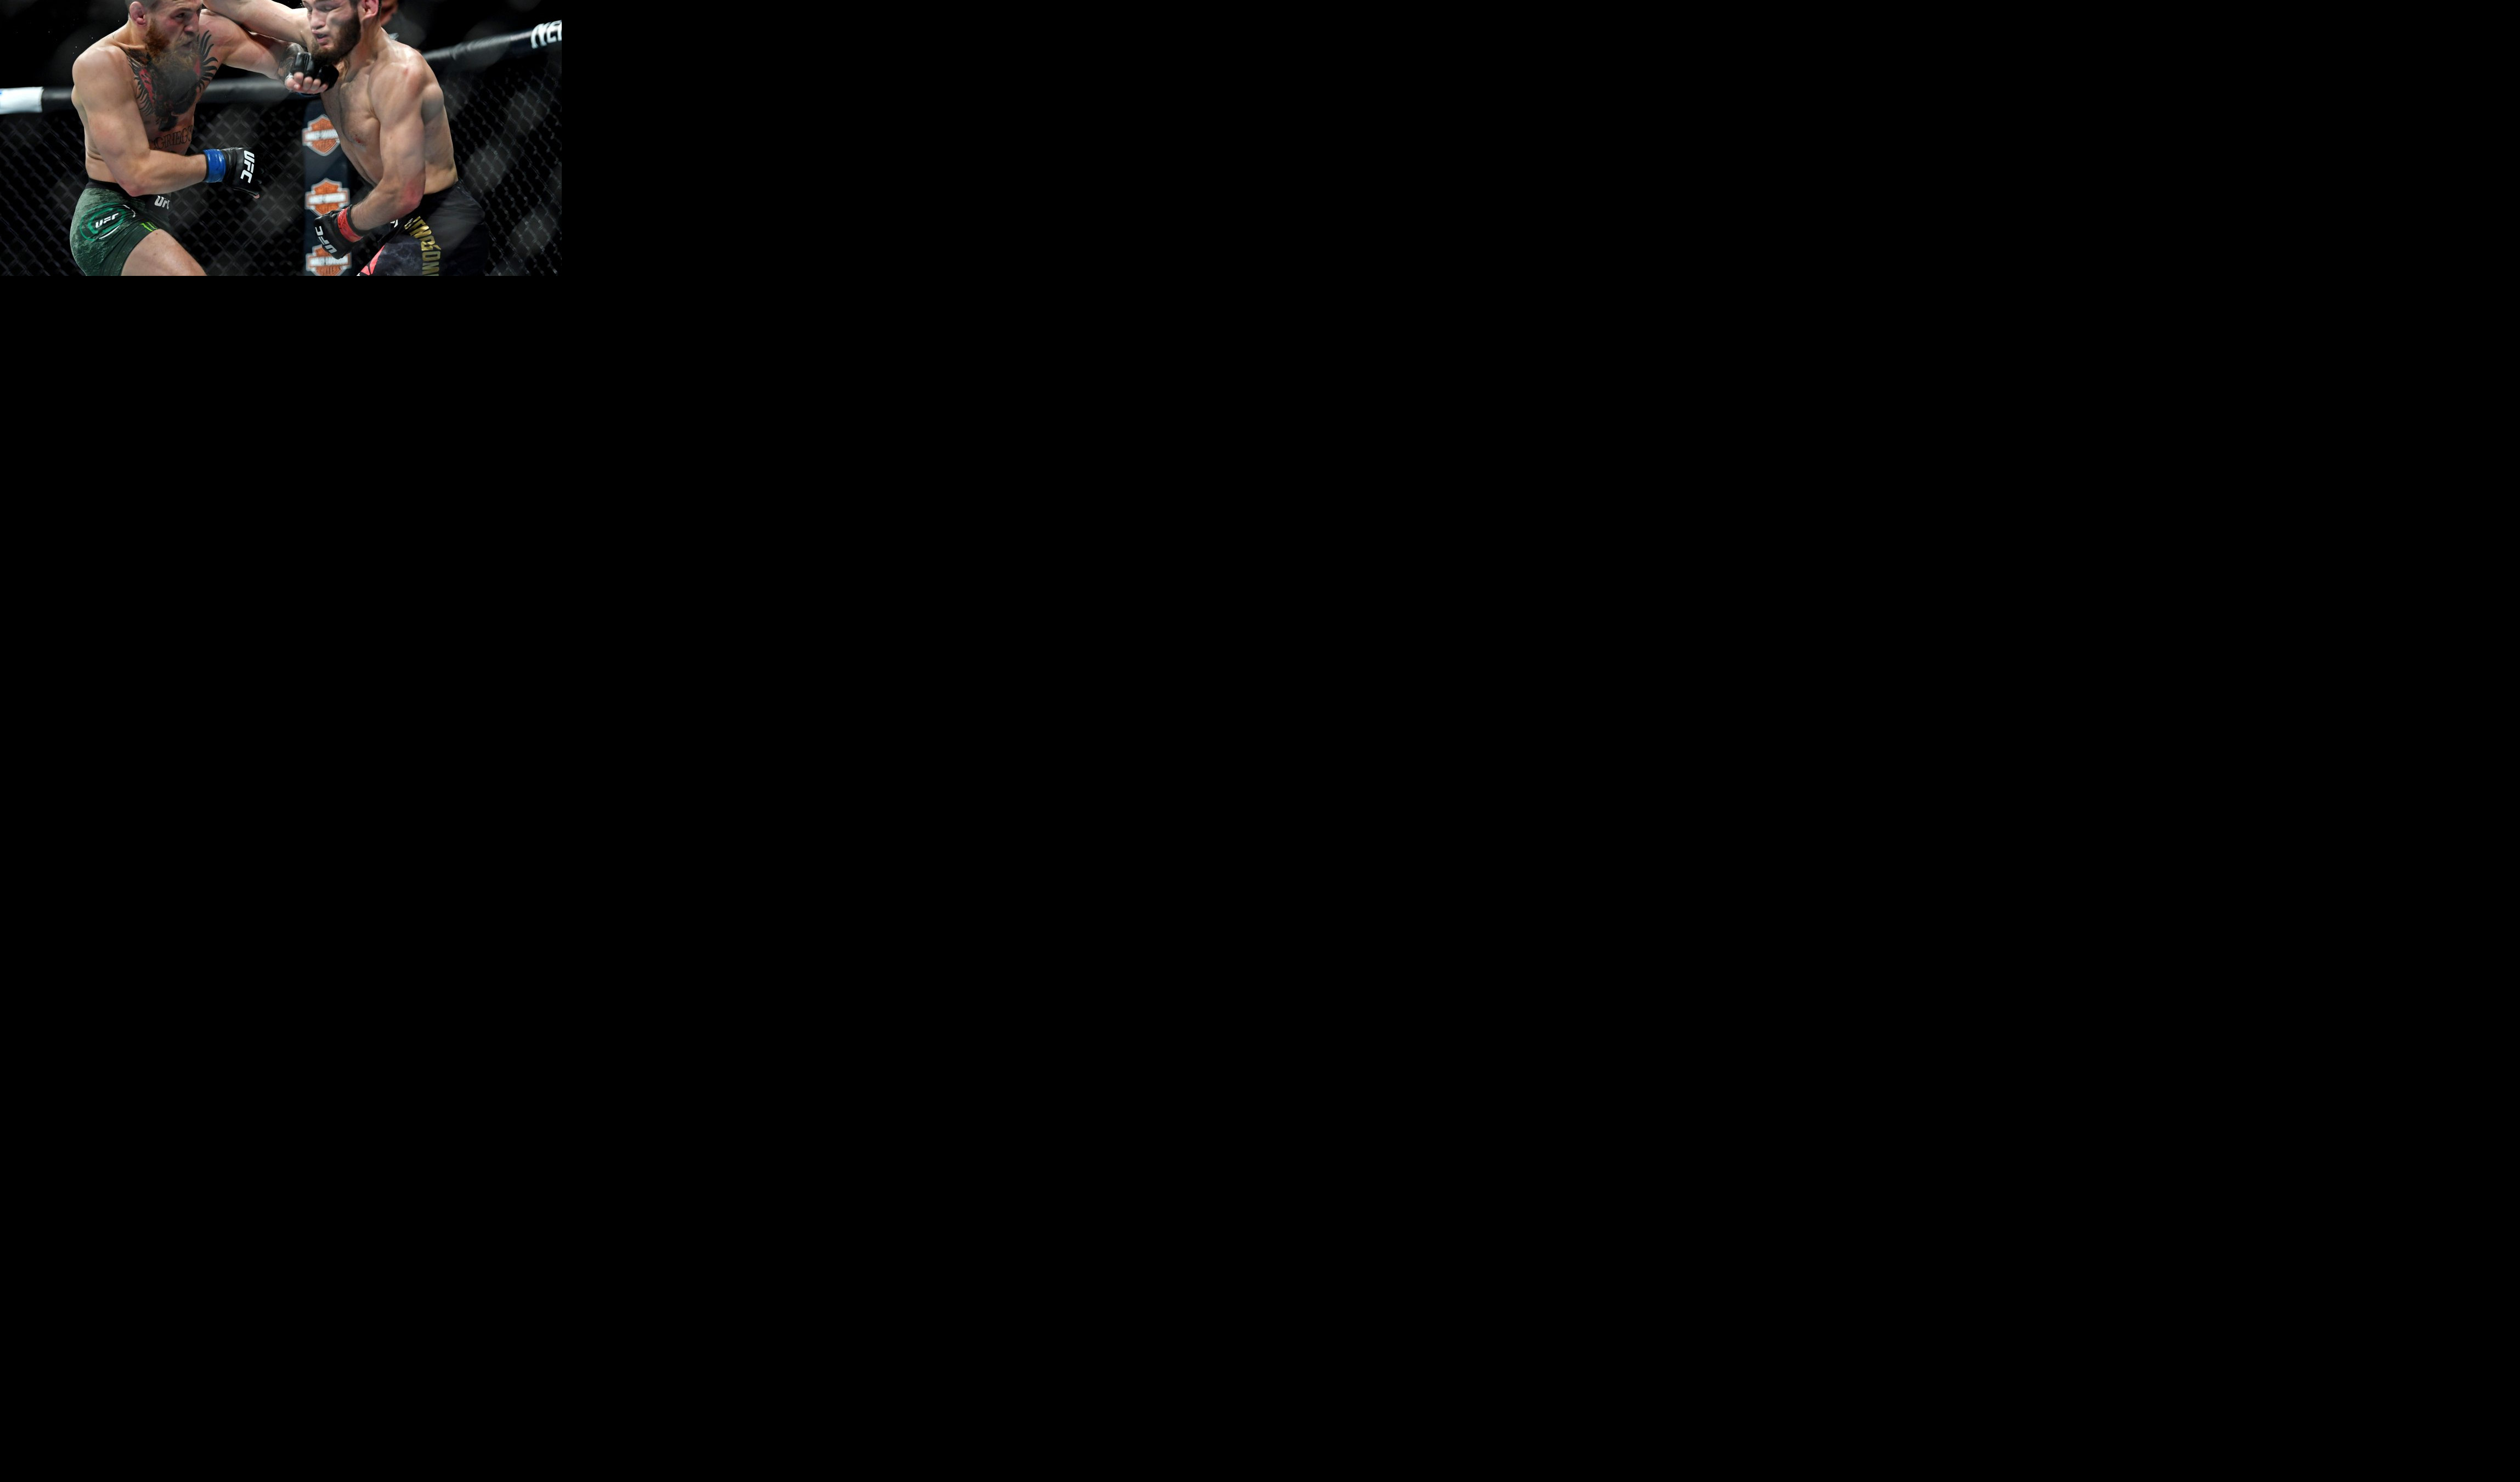 TAJ ČOVEK DRHTI, NE ŽELI MEČ! Mekgregor žestoko pecnuo Nurmagomedova pred revanš! (VIDEO)